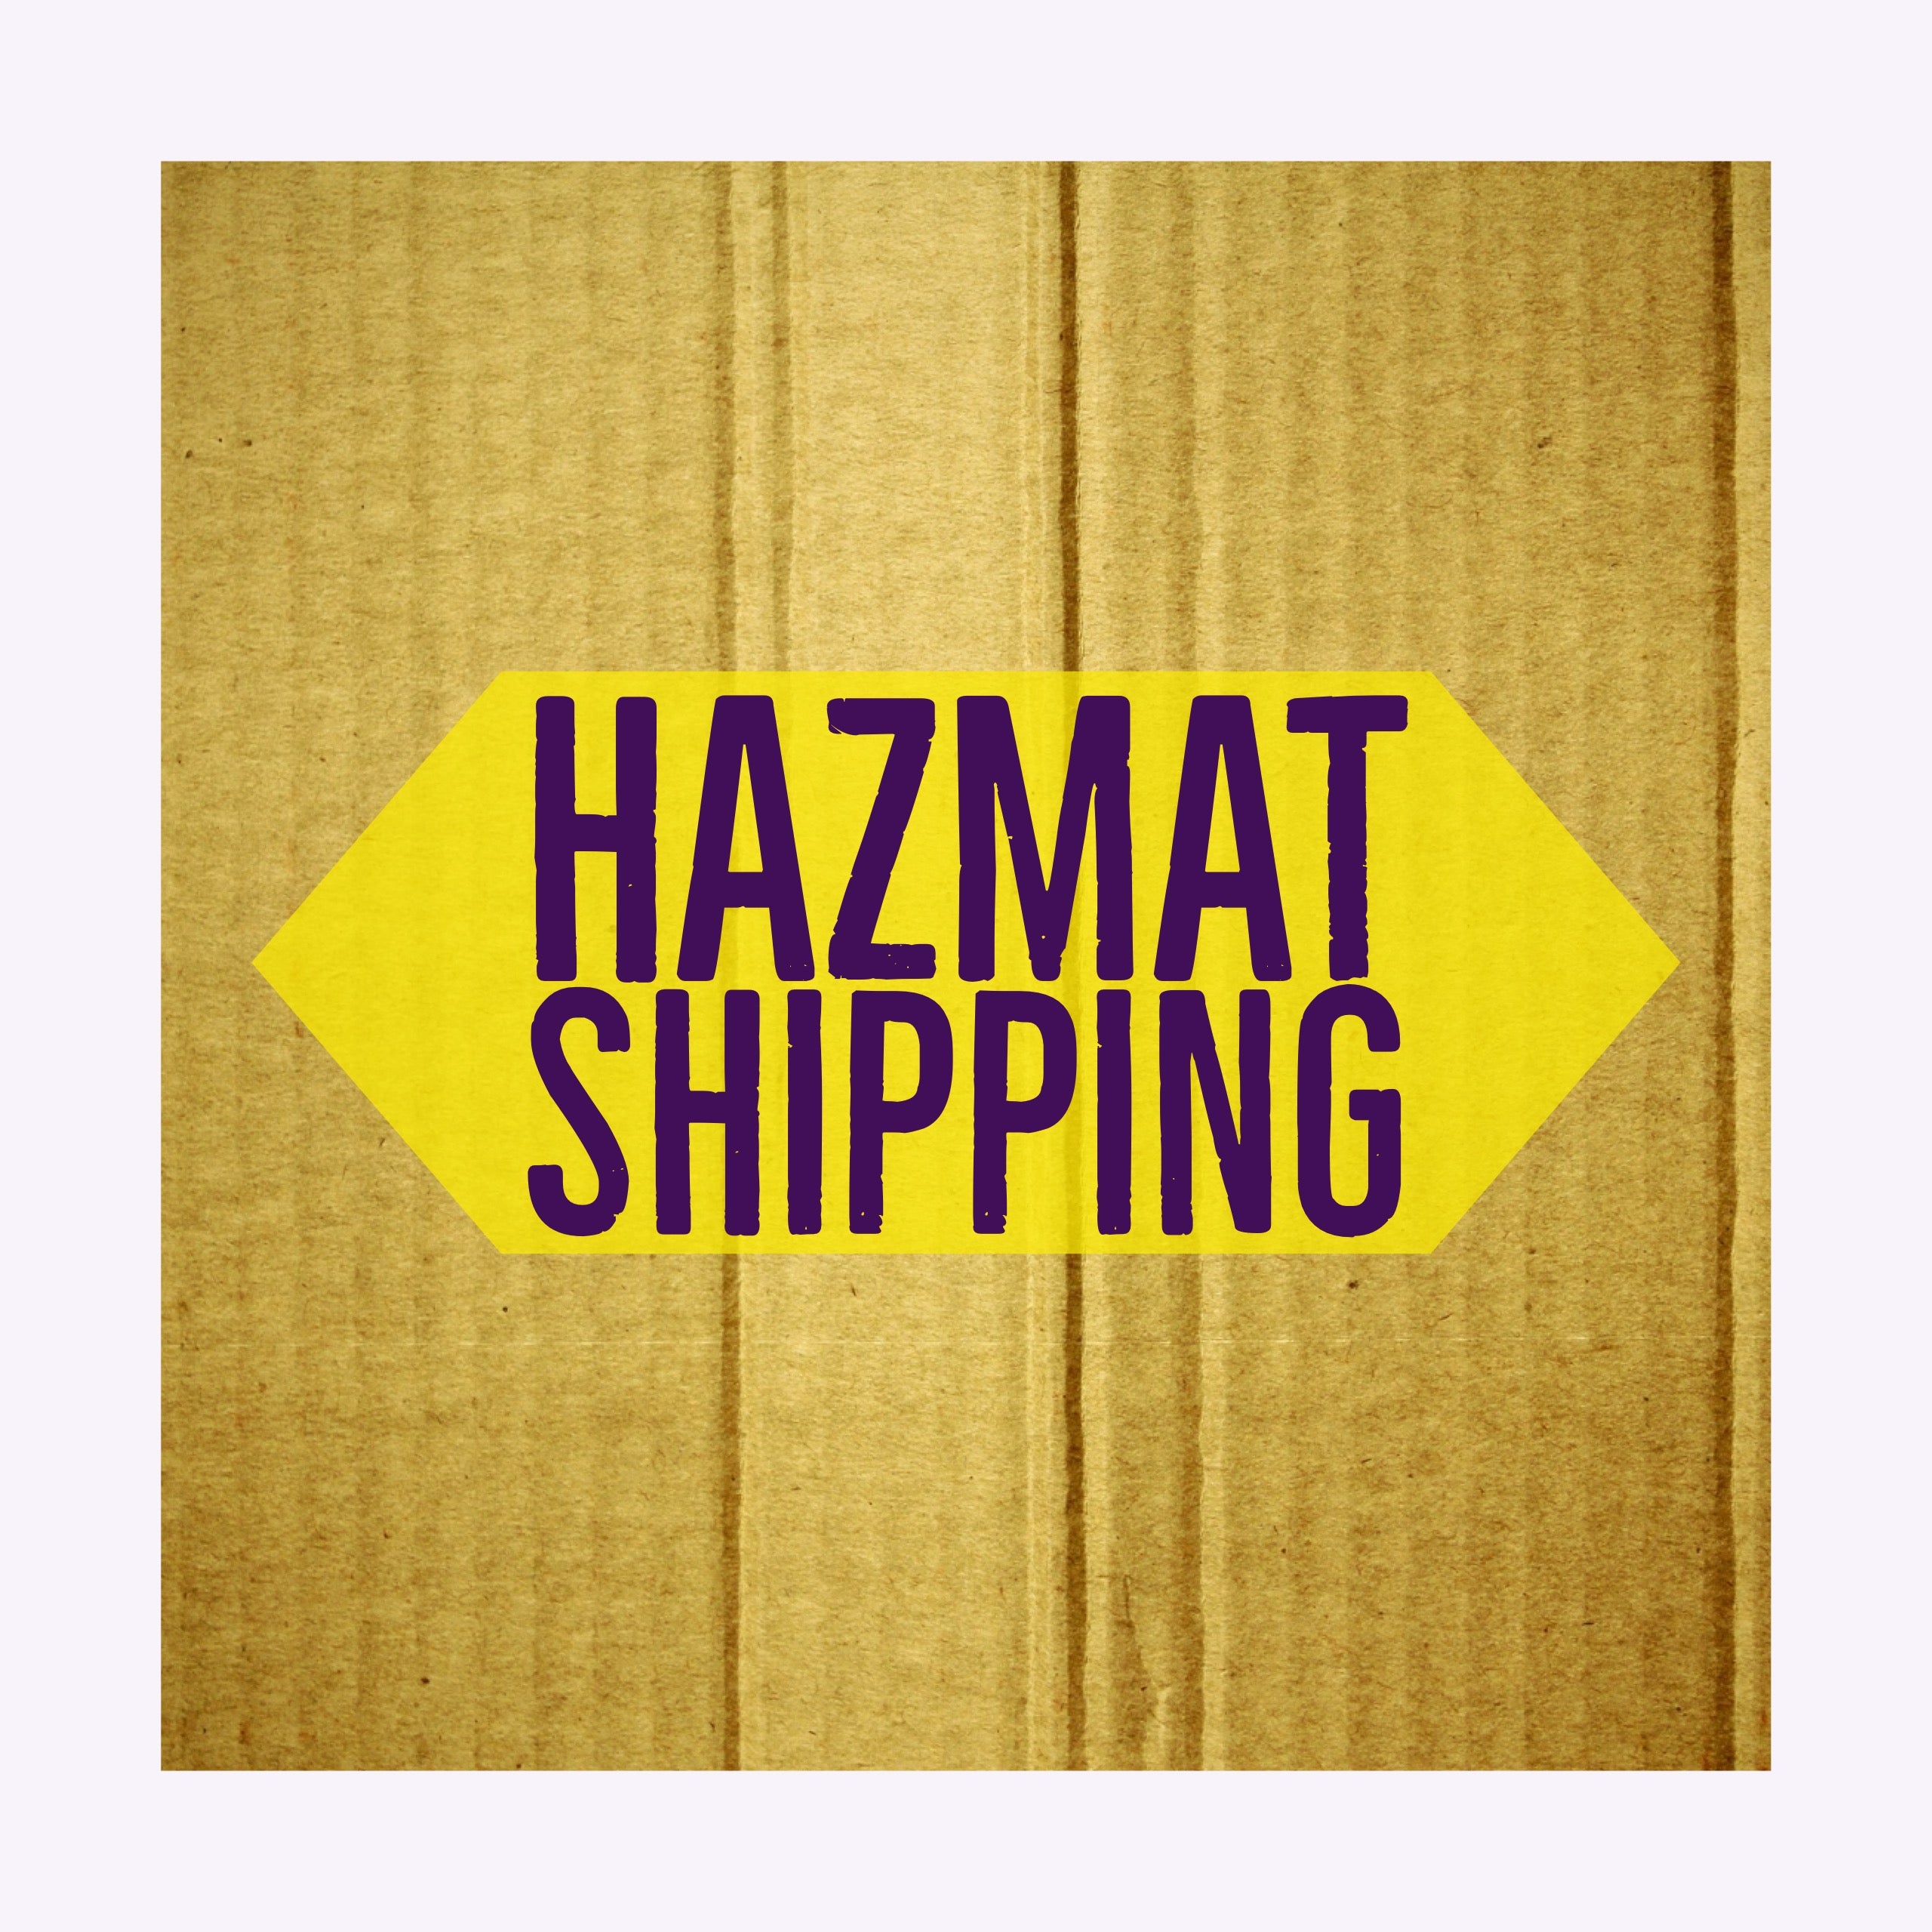 Hazardous Material Shipping Fee (per gallon)